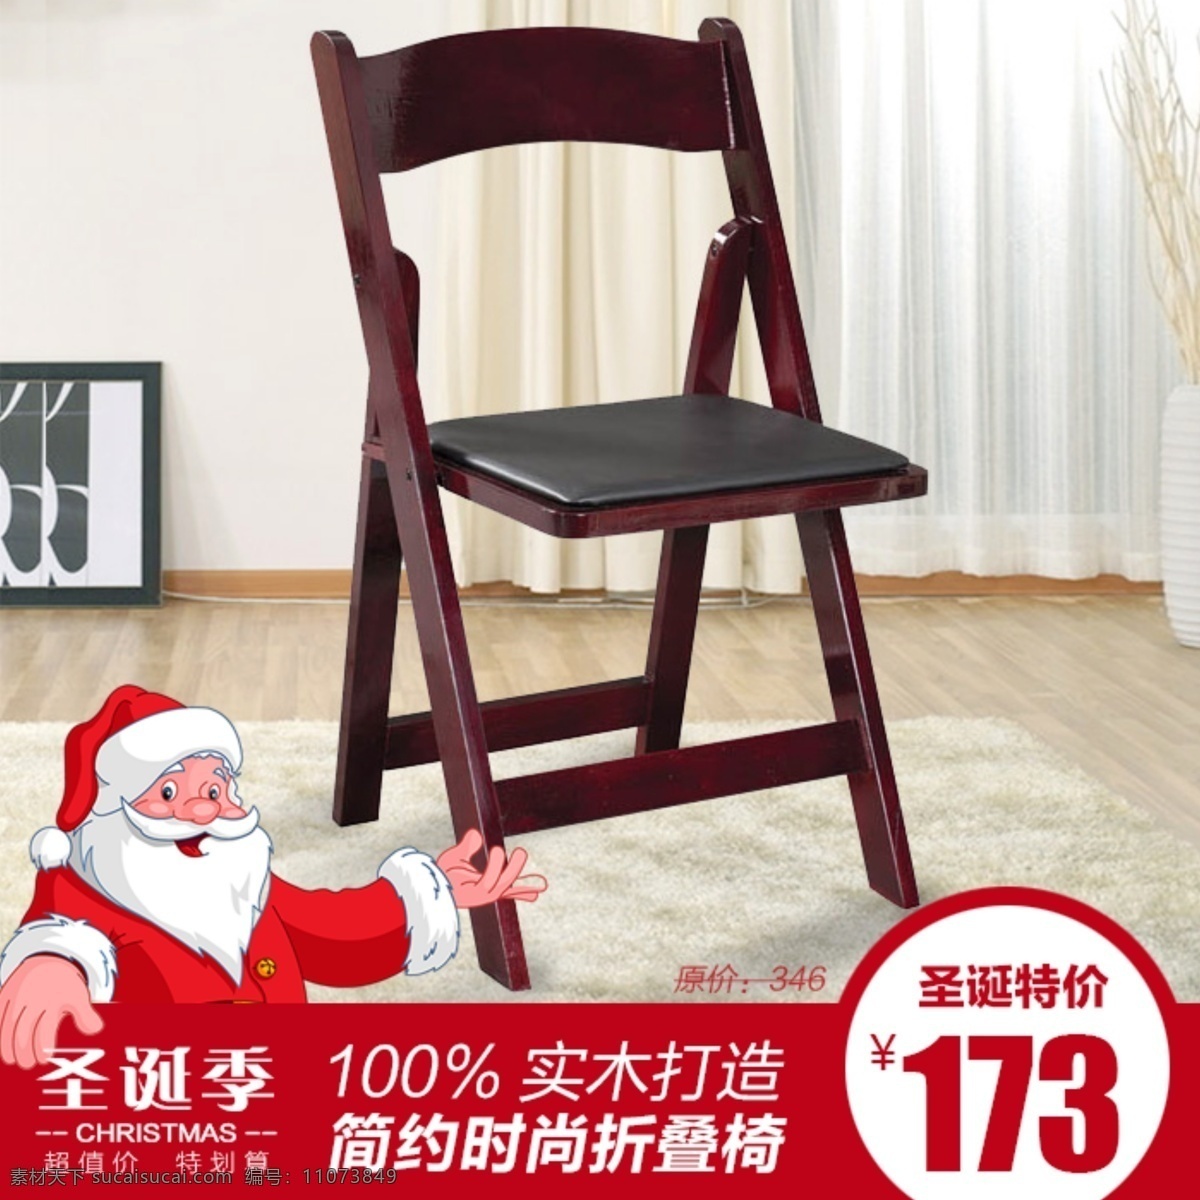 淘宝 直通车 家具 淘宝主图 椅子 圣诞节 促销 主 图 实木椅子 淘宝素材 商品